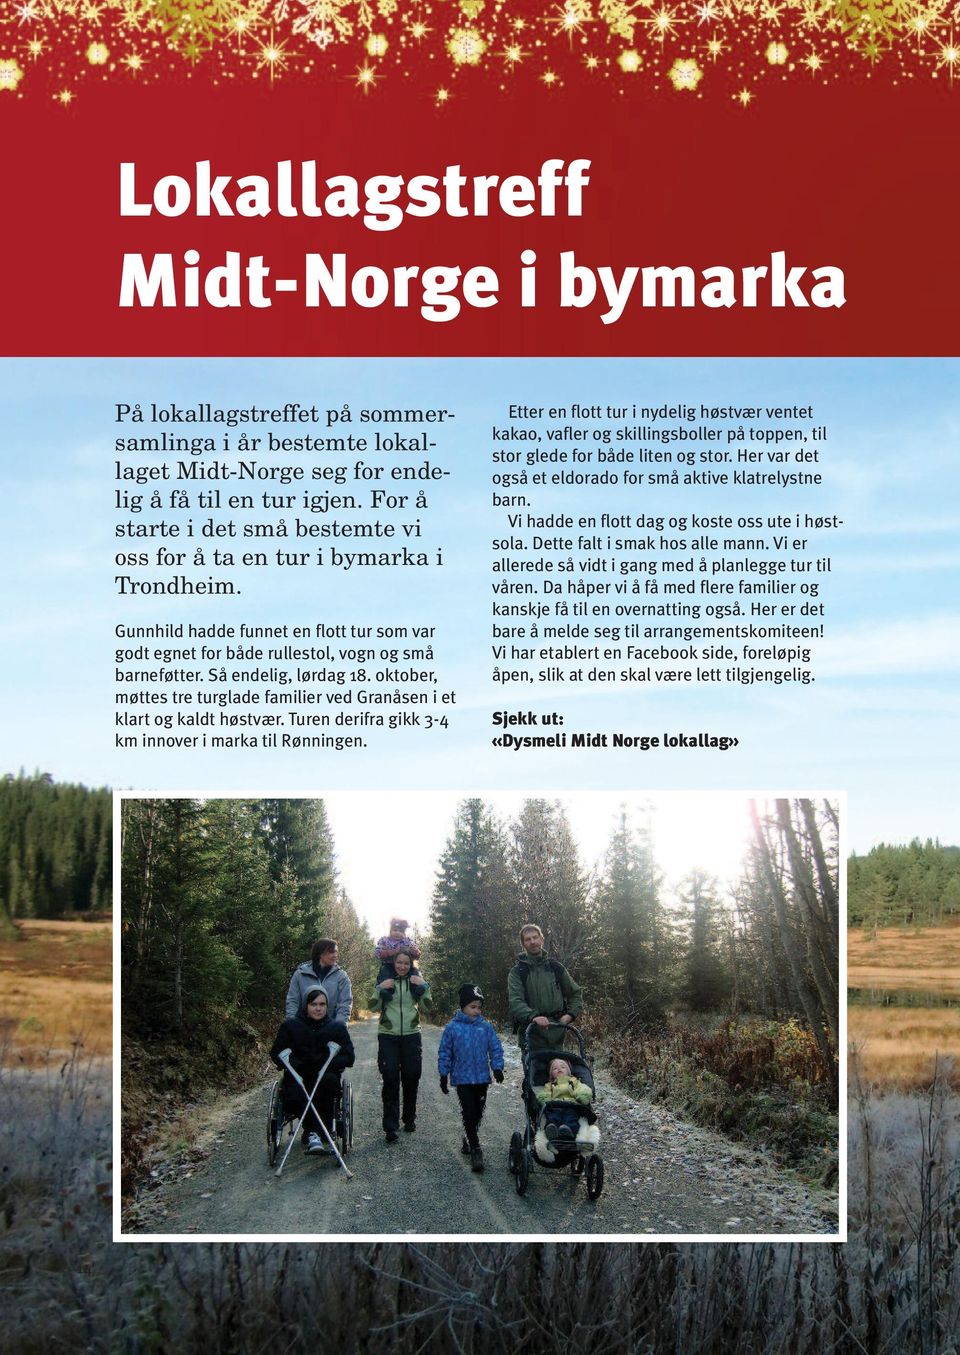 oktober, møttes tre turglade familier ved Granåsen i et klart og kaldt høstvær. Turen derifra gikk 3-4 km innover i marka til Rønningen.